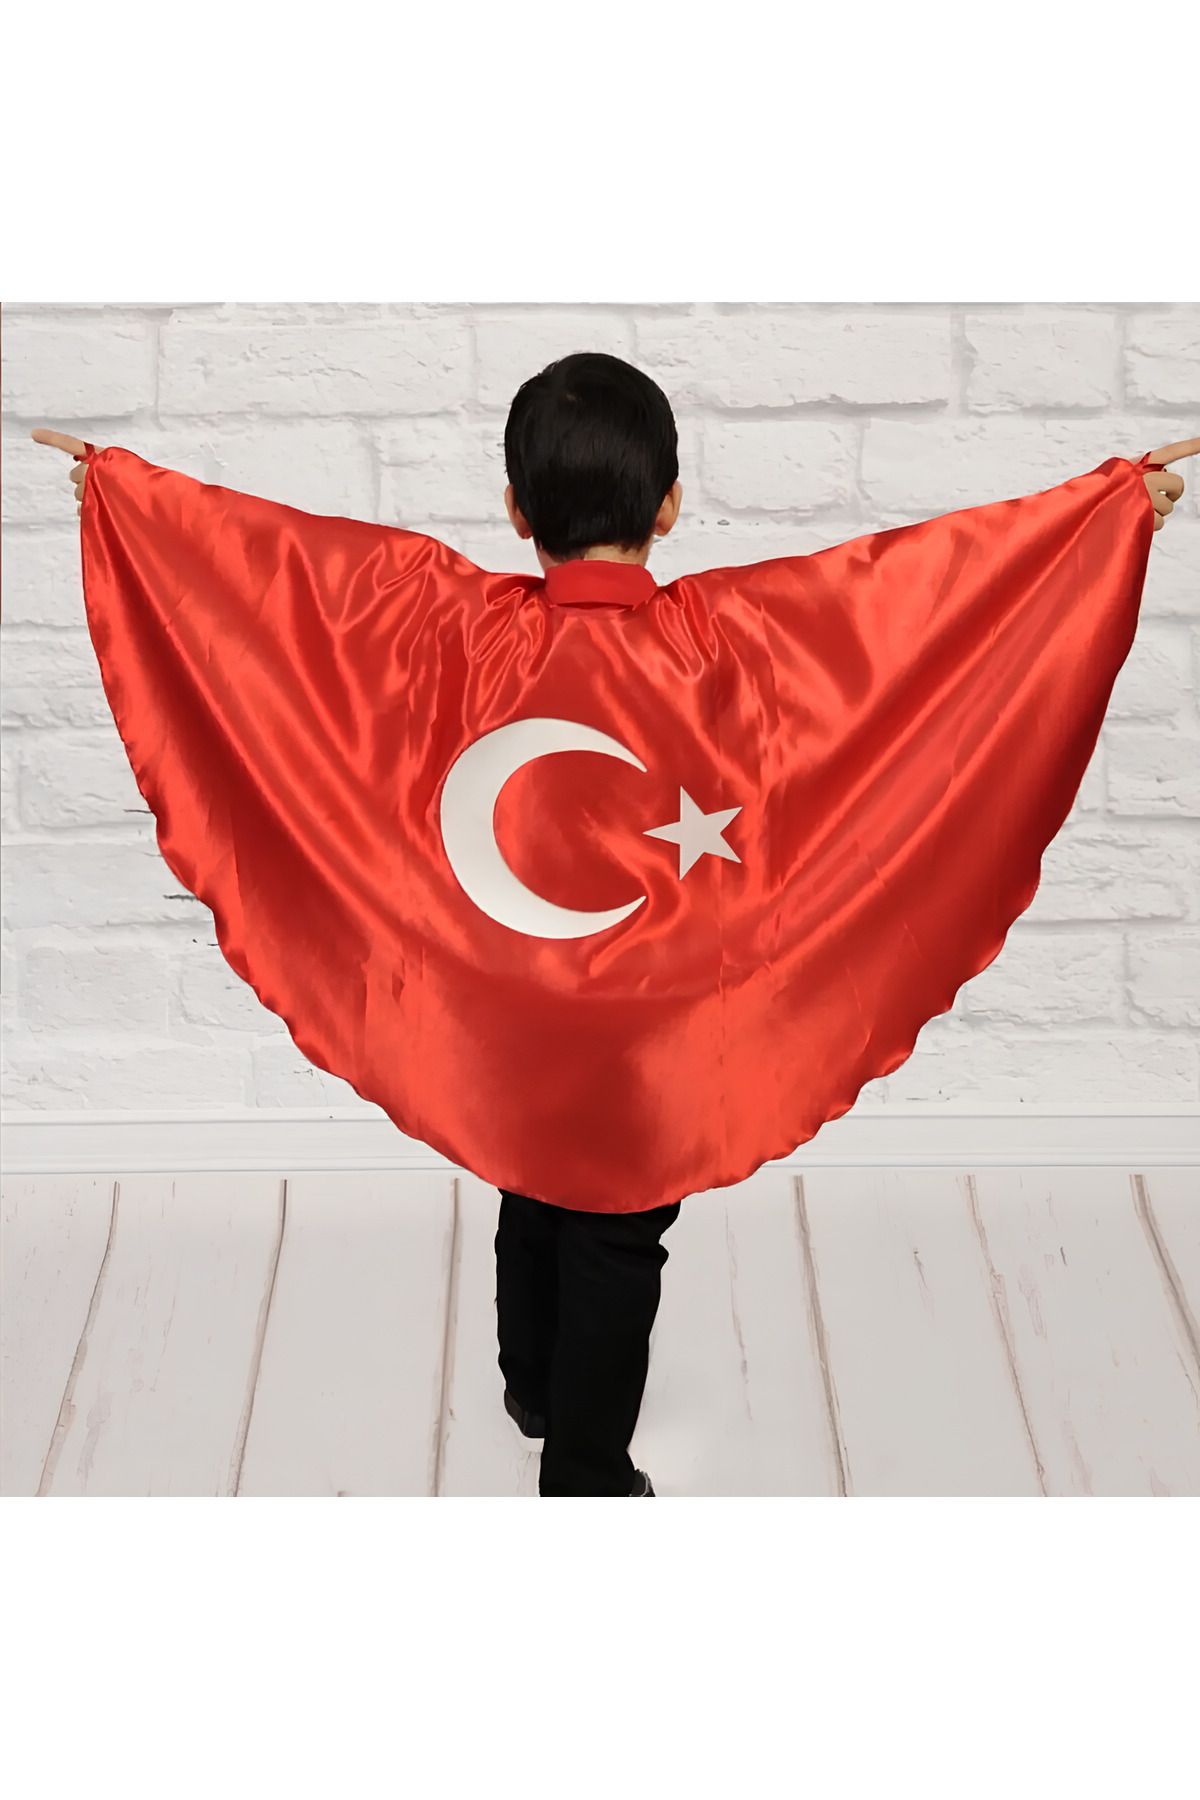 SEDİRLİ Türk Bayrağı Pelerin Gösteri Kostümü Kız-Erkek Ay Yıldız Bayraklı 23 nisan,19 mayıs,29 ekim